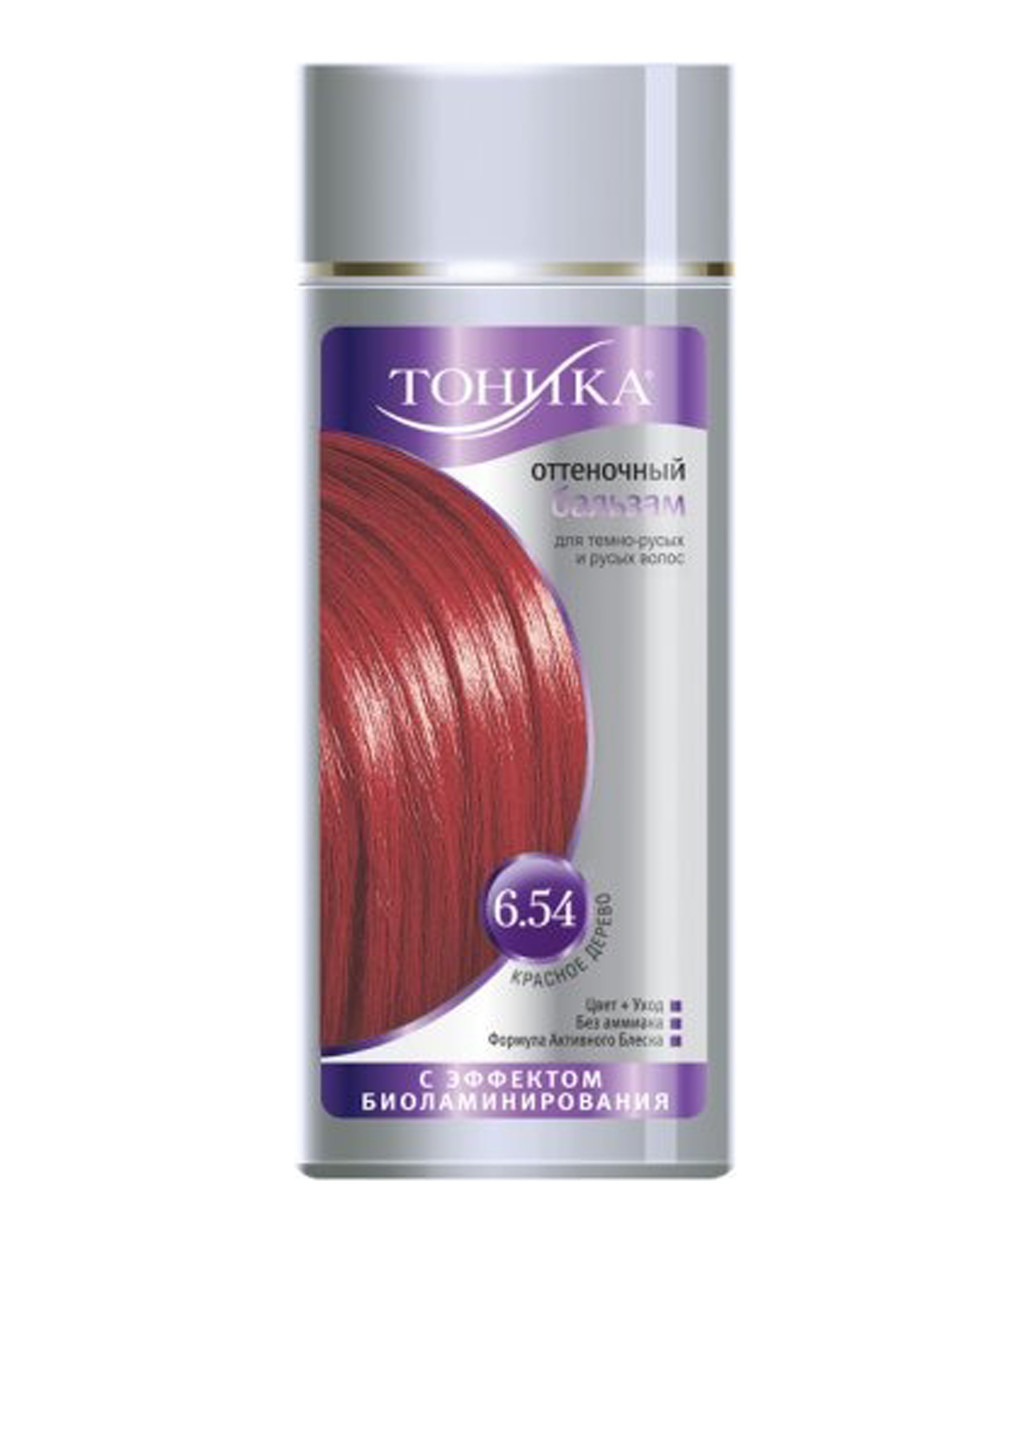 Оттеночный бальзам для волос 6.54 Красное дерево с эффектом биоламинирования, 150 мл Тоника (140830425)